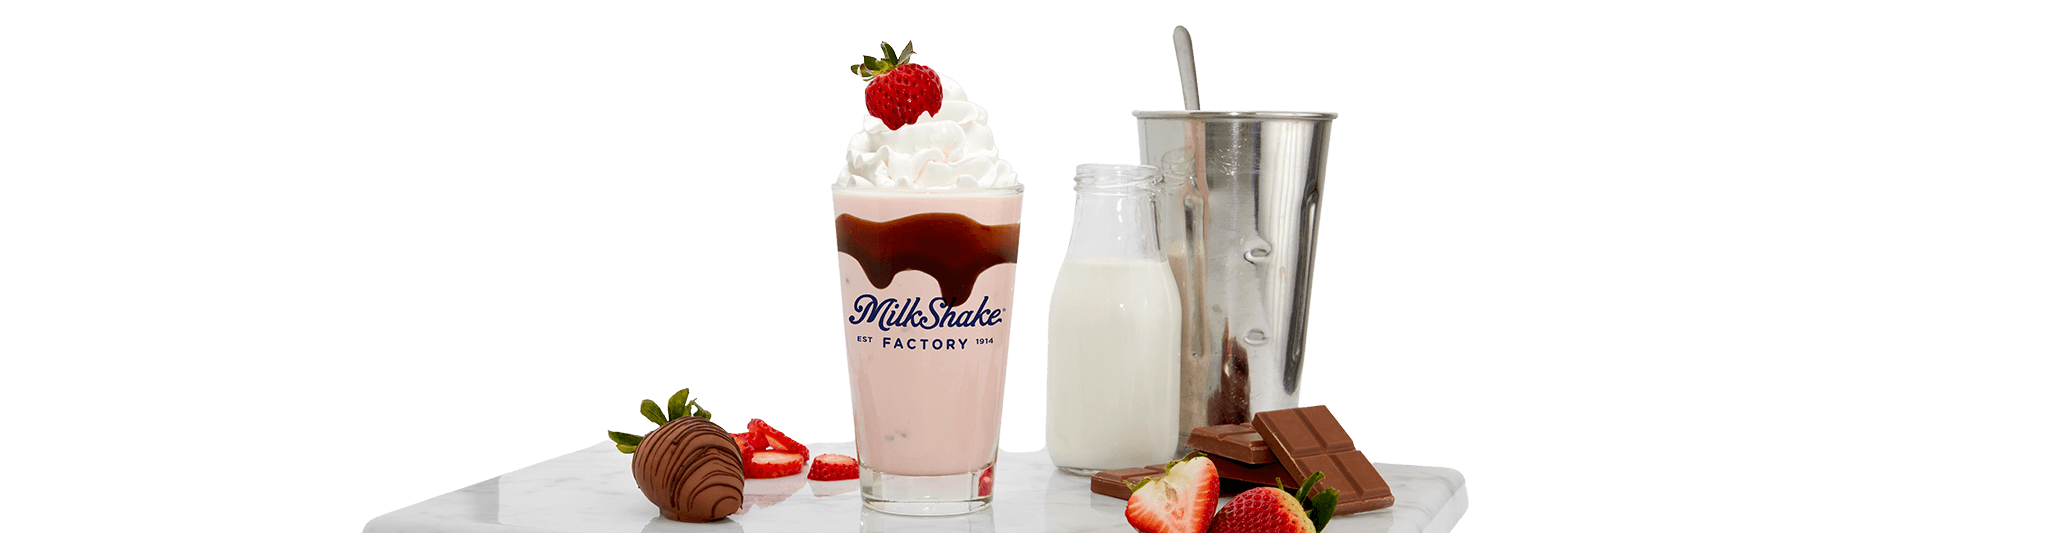 chocolate strawberry milkshake